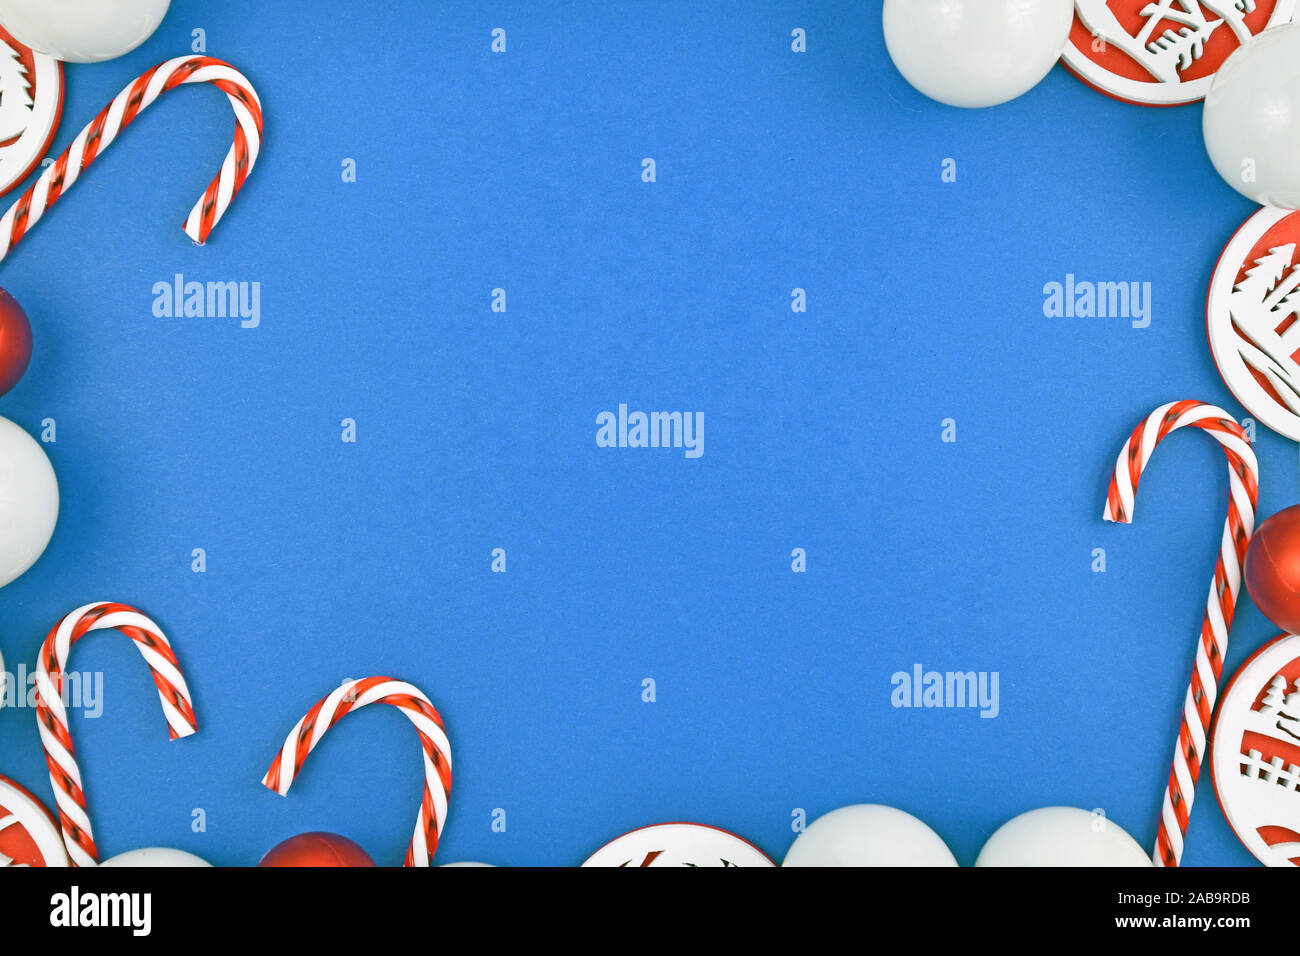 Weihnachten flach mit roten und weißen Christbaumschmuck wie Kugeln und Zuckerstangen bilden Rahmen um helle blaue Hintergrund Stockfoto